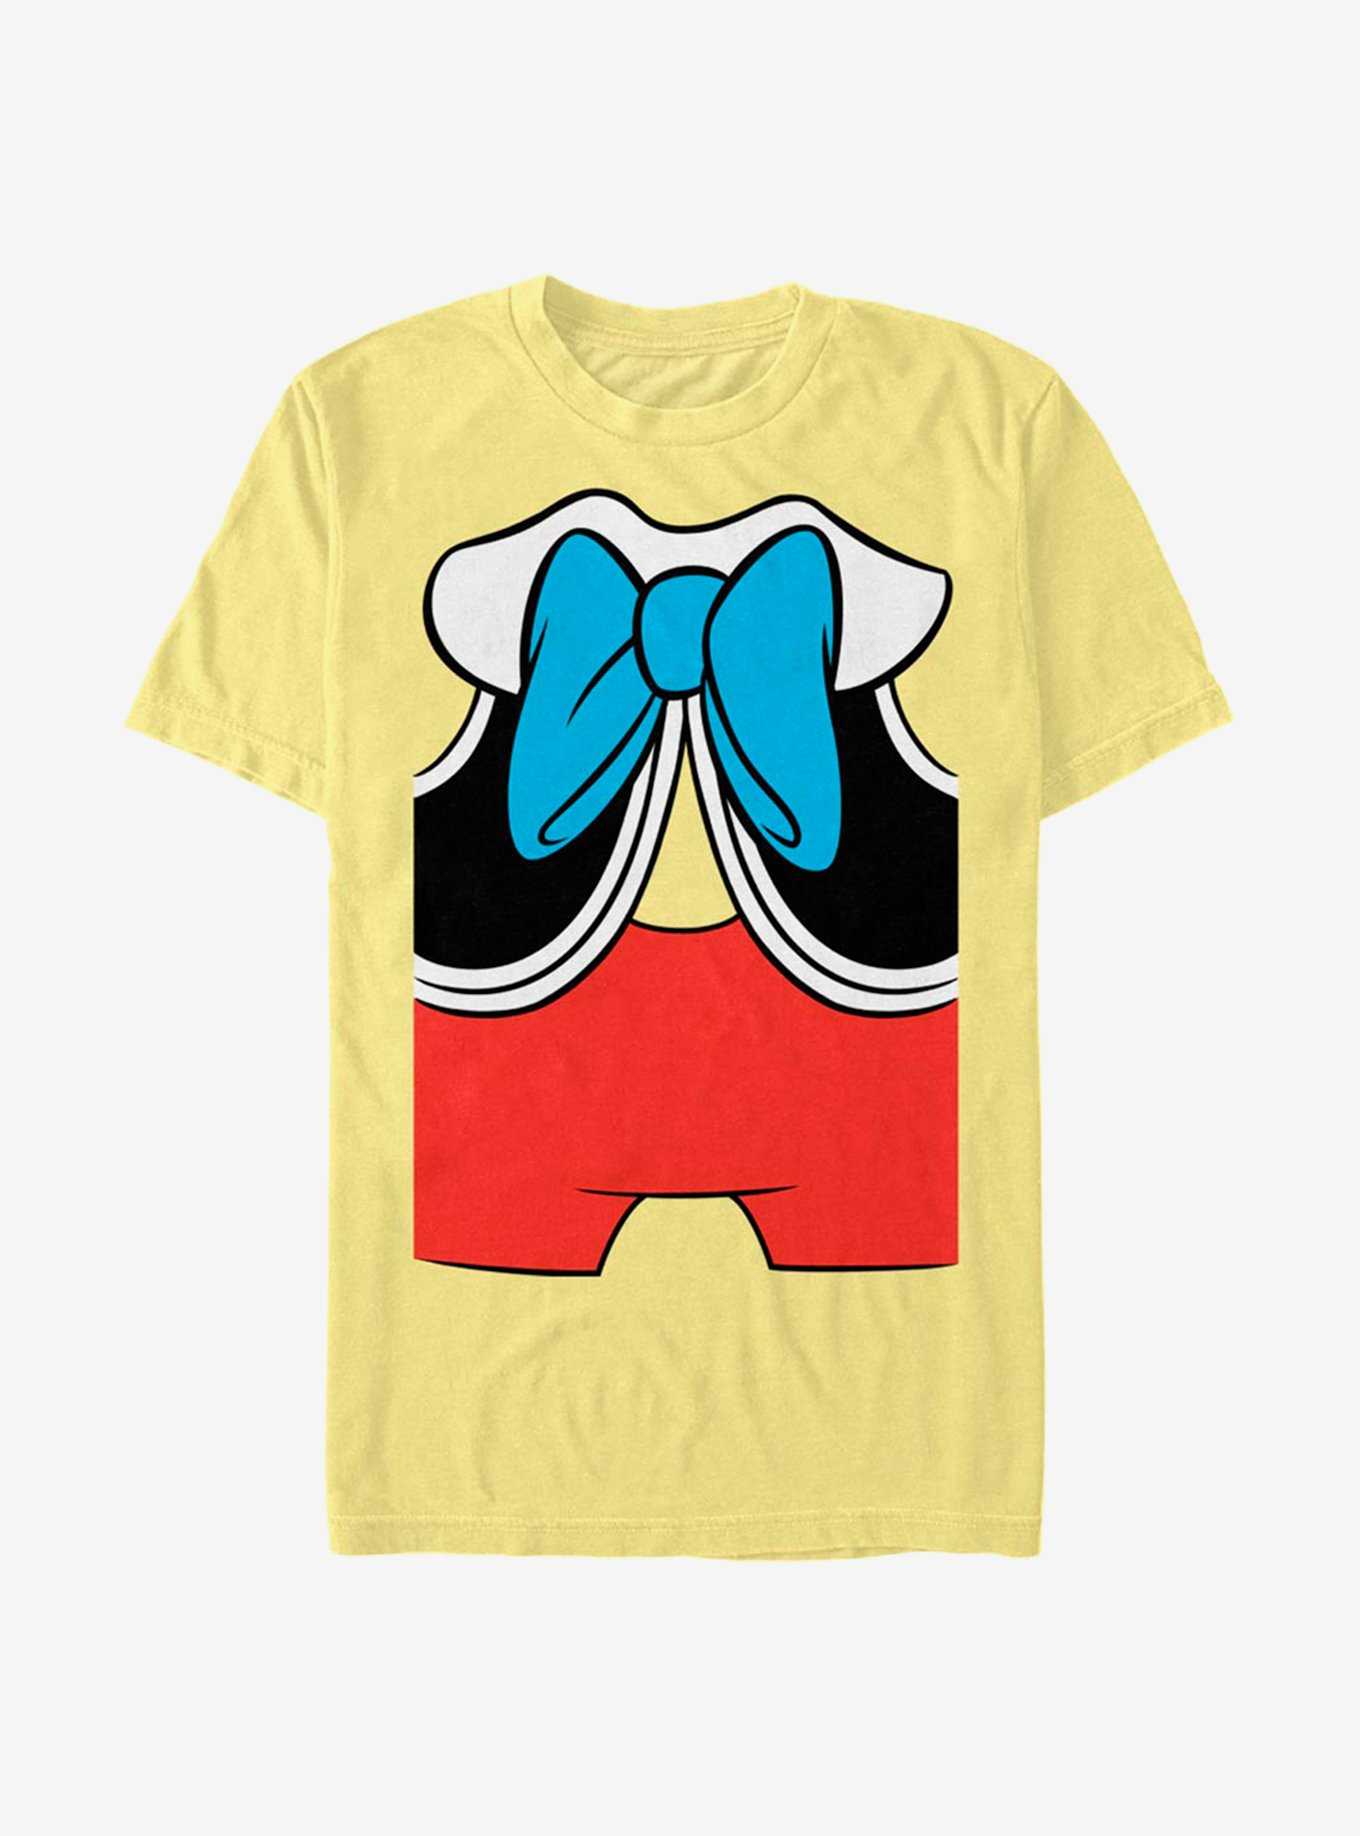 Disney Pinocchio Pinocchio Costume T-Shirt, , hi-res